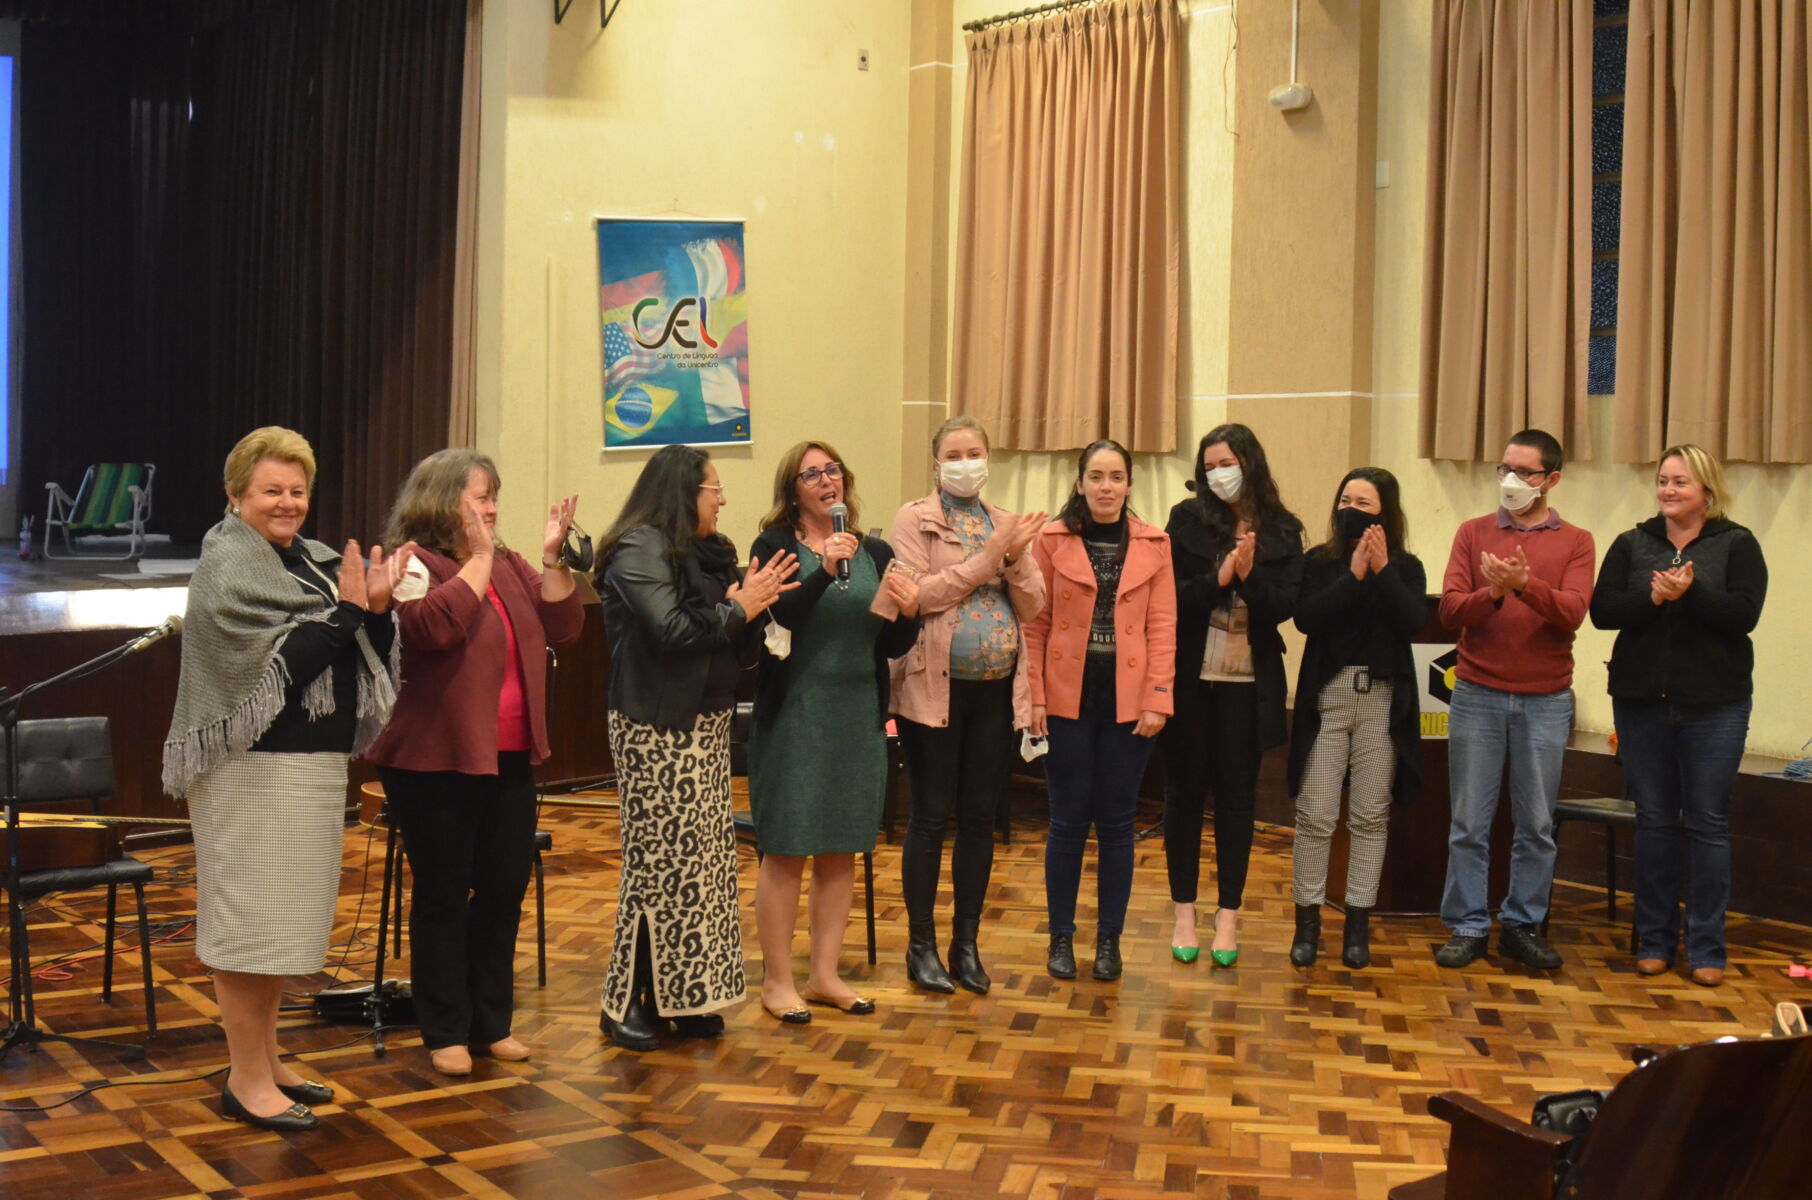 Apresentações culturais e musicais marcam a aula inaugural do Sehla Irati